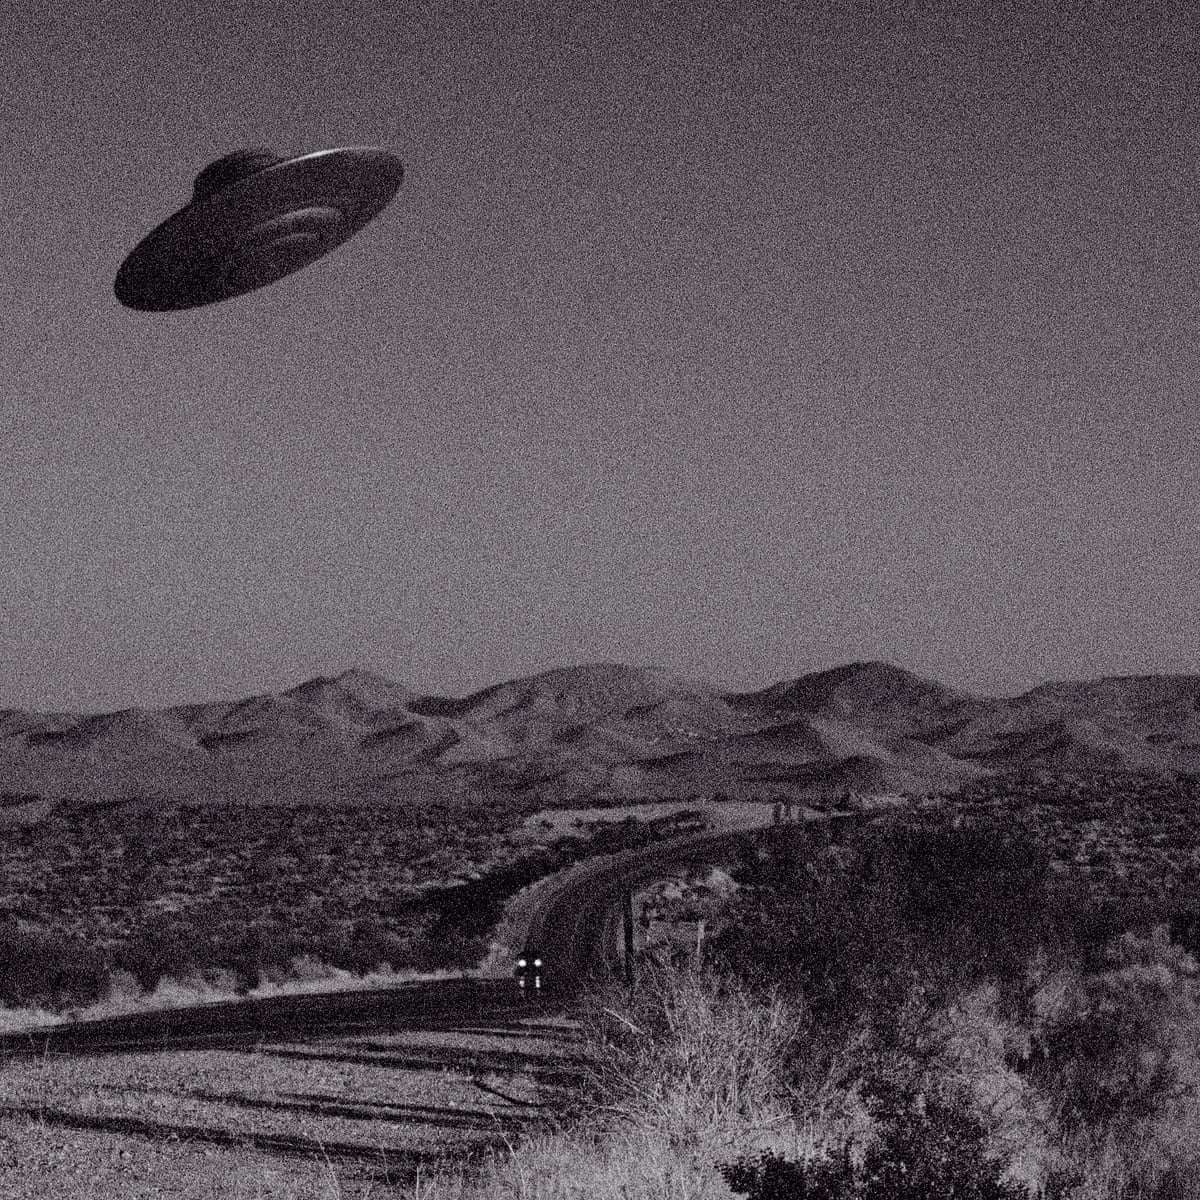 WORLD UFO DAY 02 JULY, 2020: सिर्फ हम ही नहीं, यूएफओ भी रखते हैं आसमान पर अधिकार